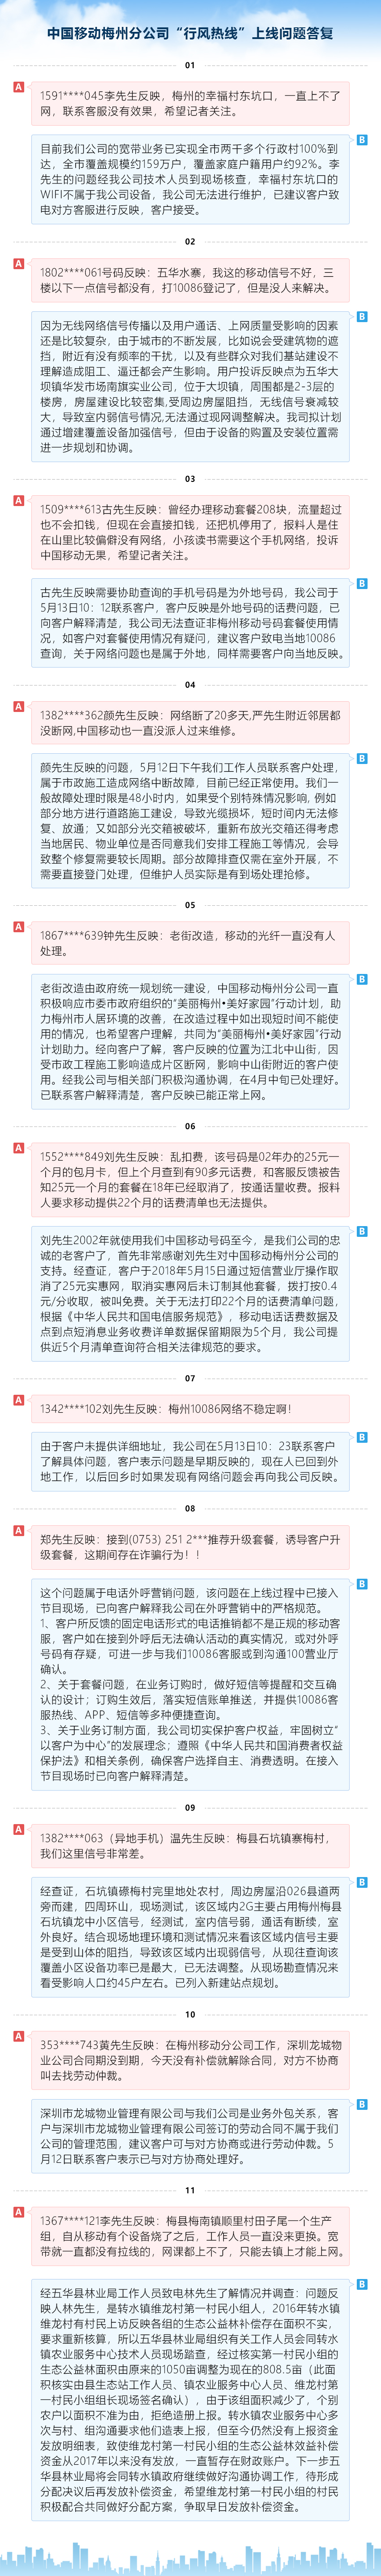 中国移动梅州分公司“行风热线”上线问题答复.jpg